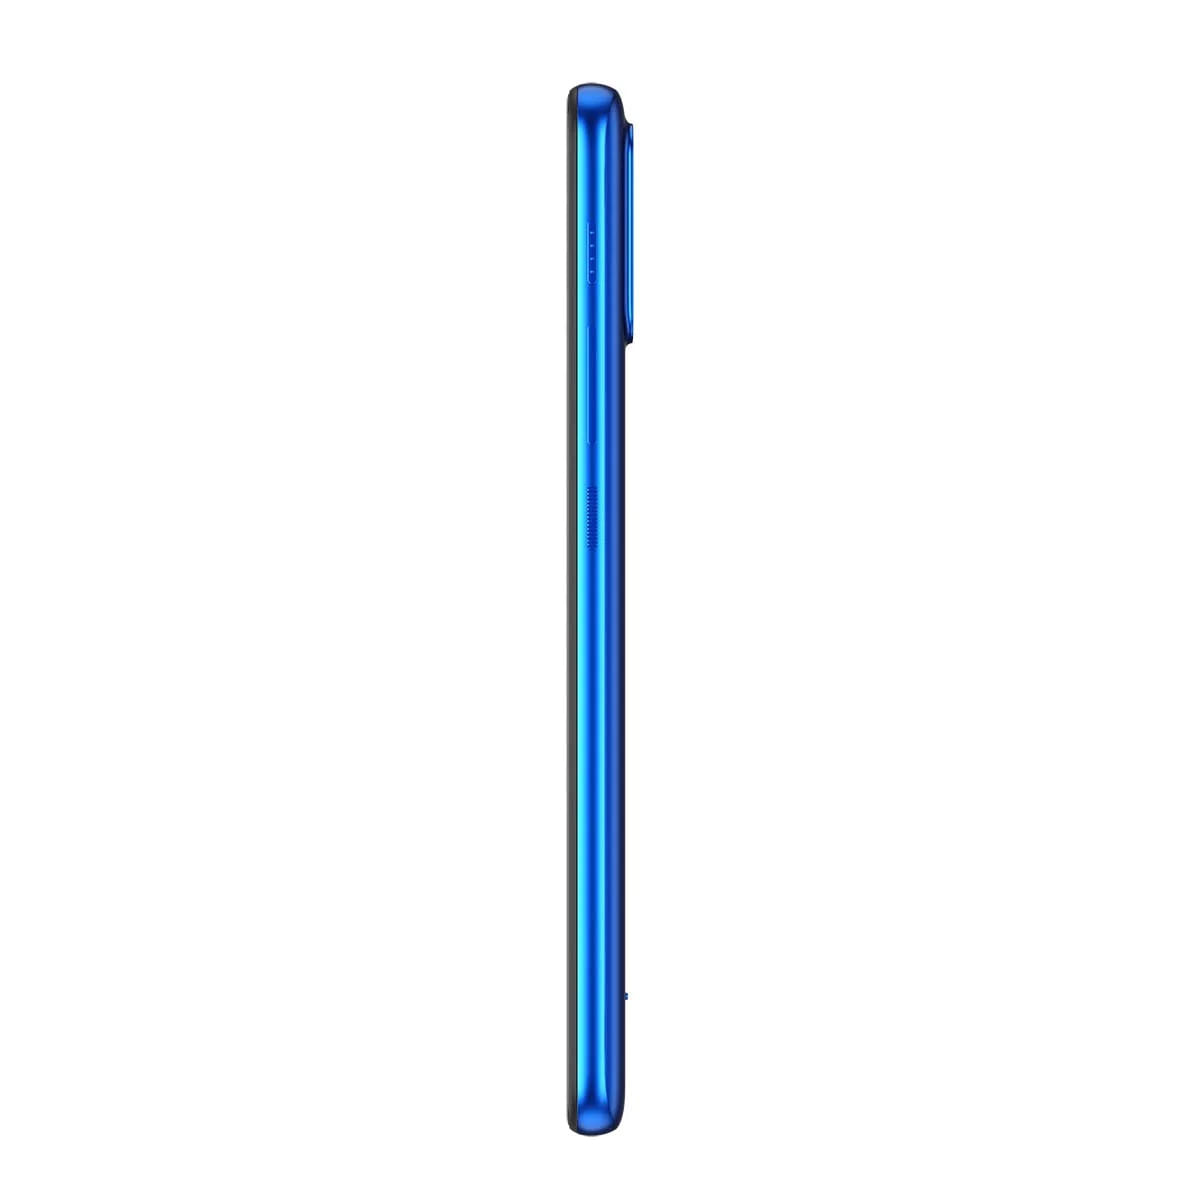 Smartphone Motorola Moto E7 Power 32GB 4G Azul Metal 6,5” 13MP Lado Direito